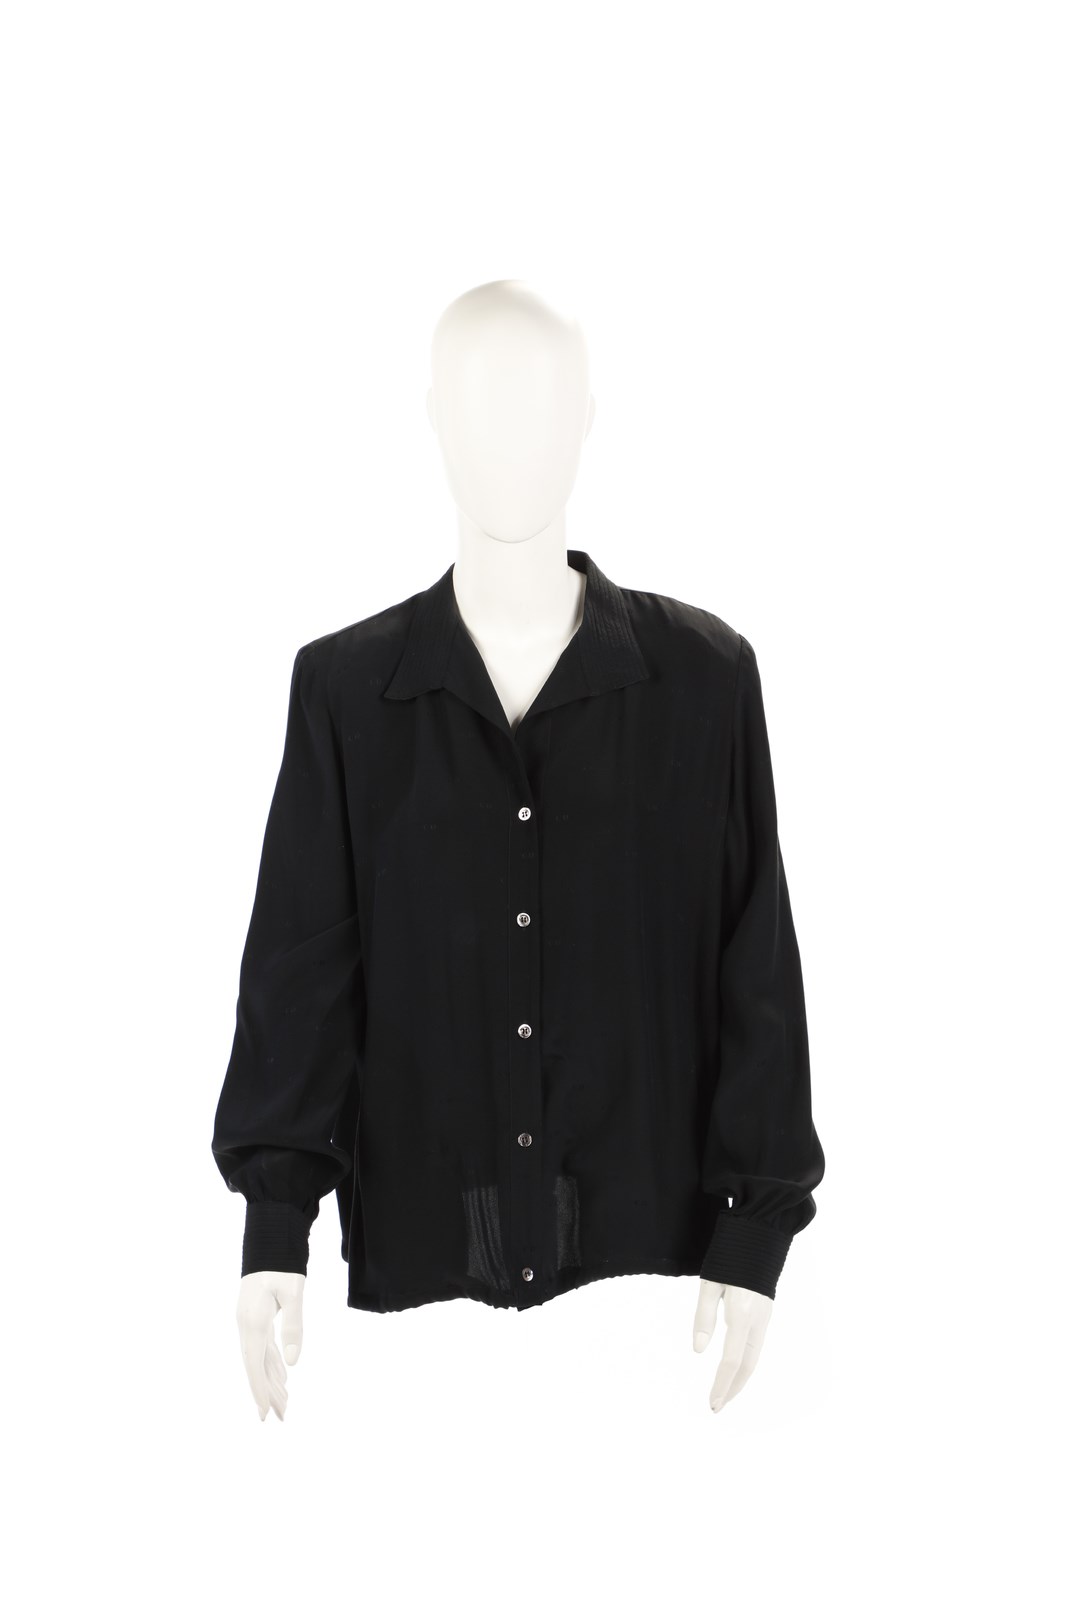 Camicia in georgette di seta nera. (Christian Dior)